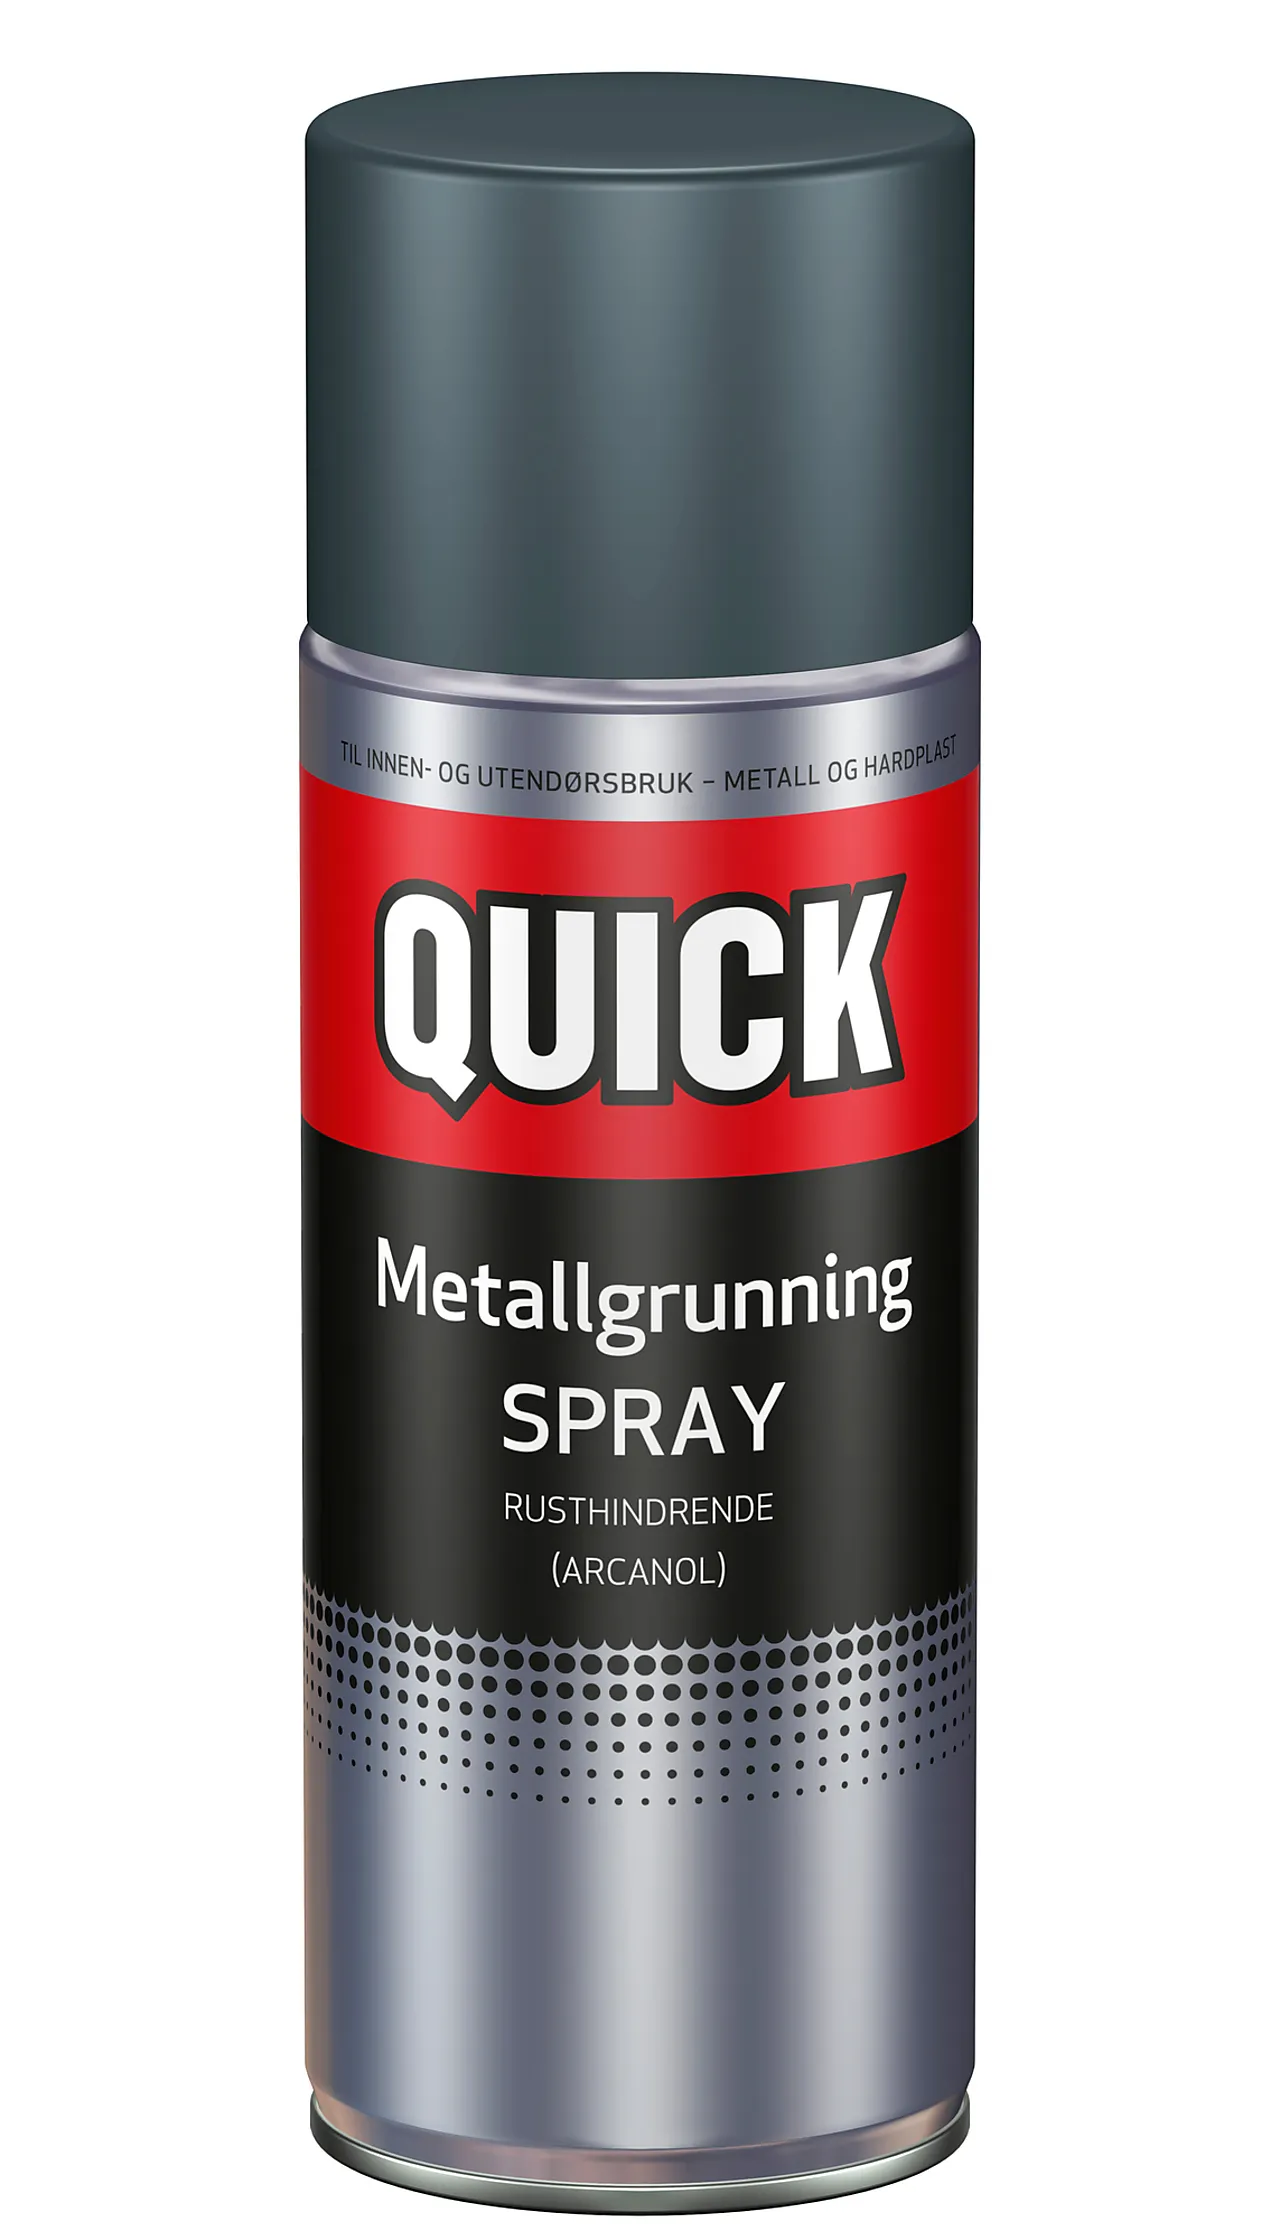 Spray metallgrunning